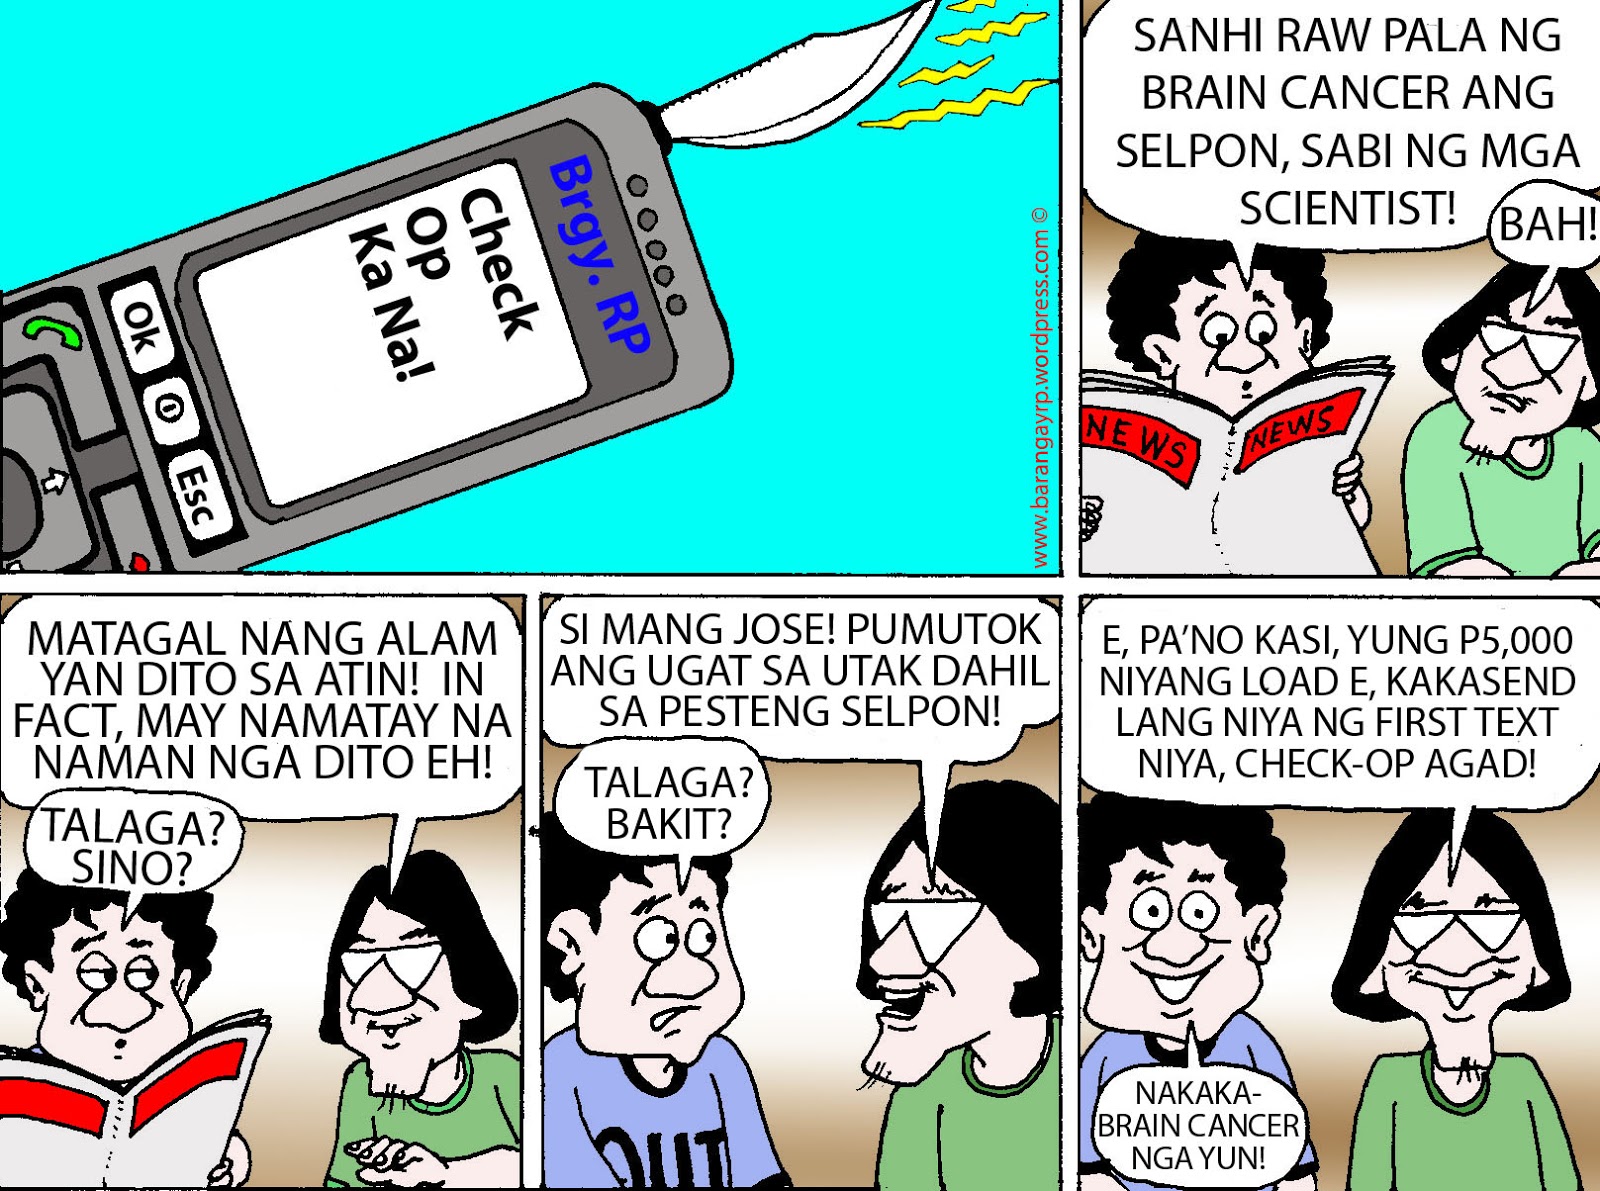 komiks tungkol sa kalikasan - philippin news collections